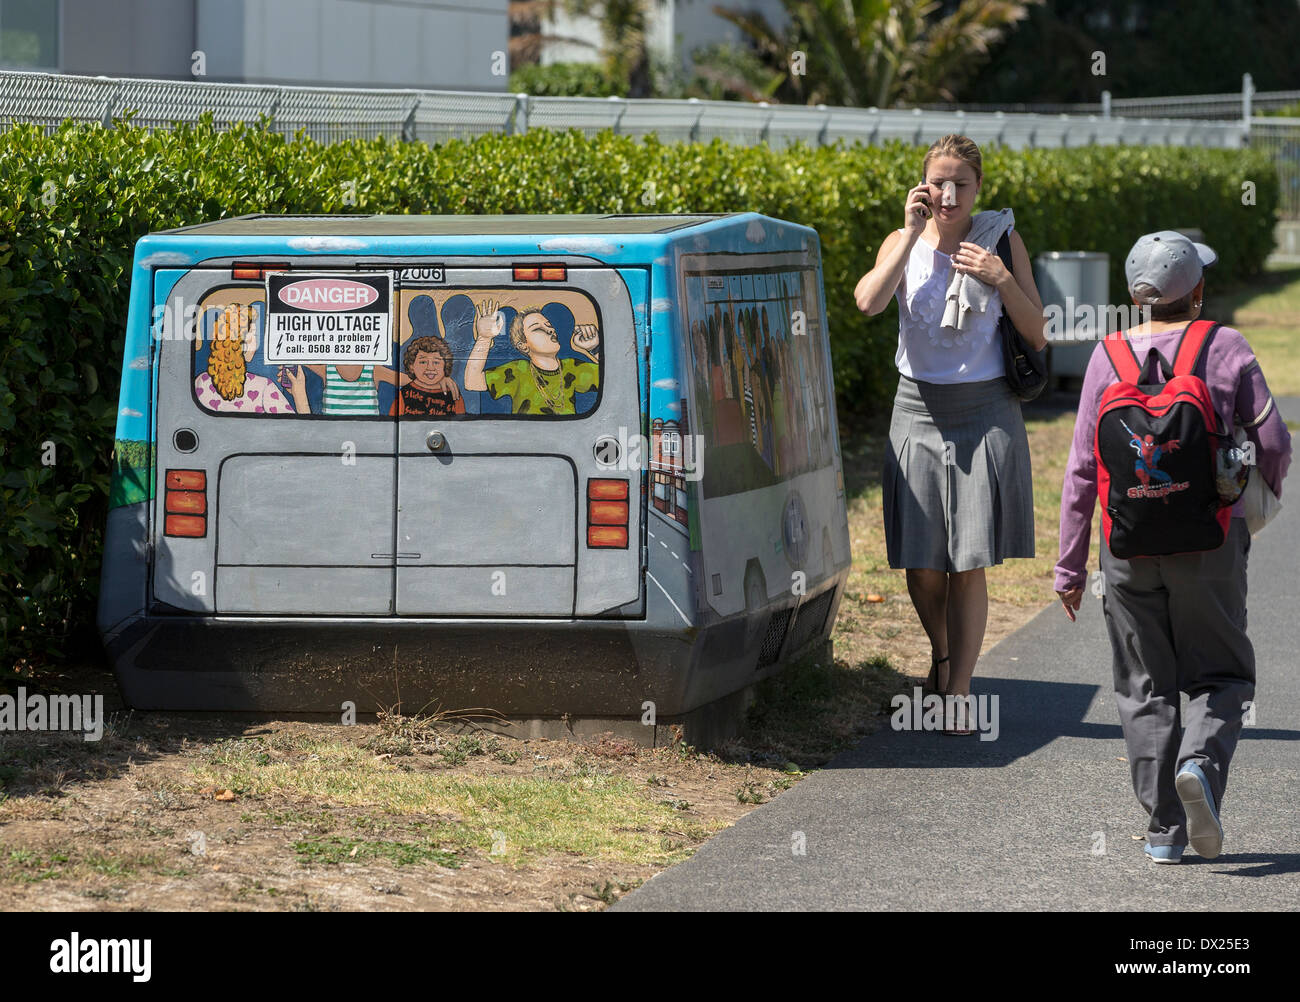 Les piétons passant une boîte de jonction de télécommunications à Auckland, Nouvelle-Zélande, peint pour ressembler à un bus Banque D'Images